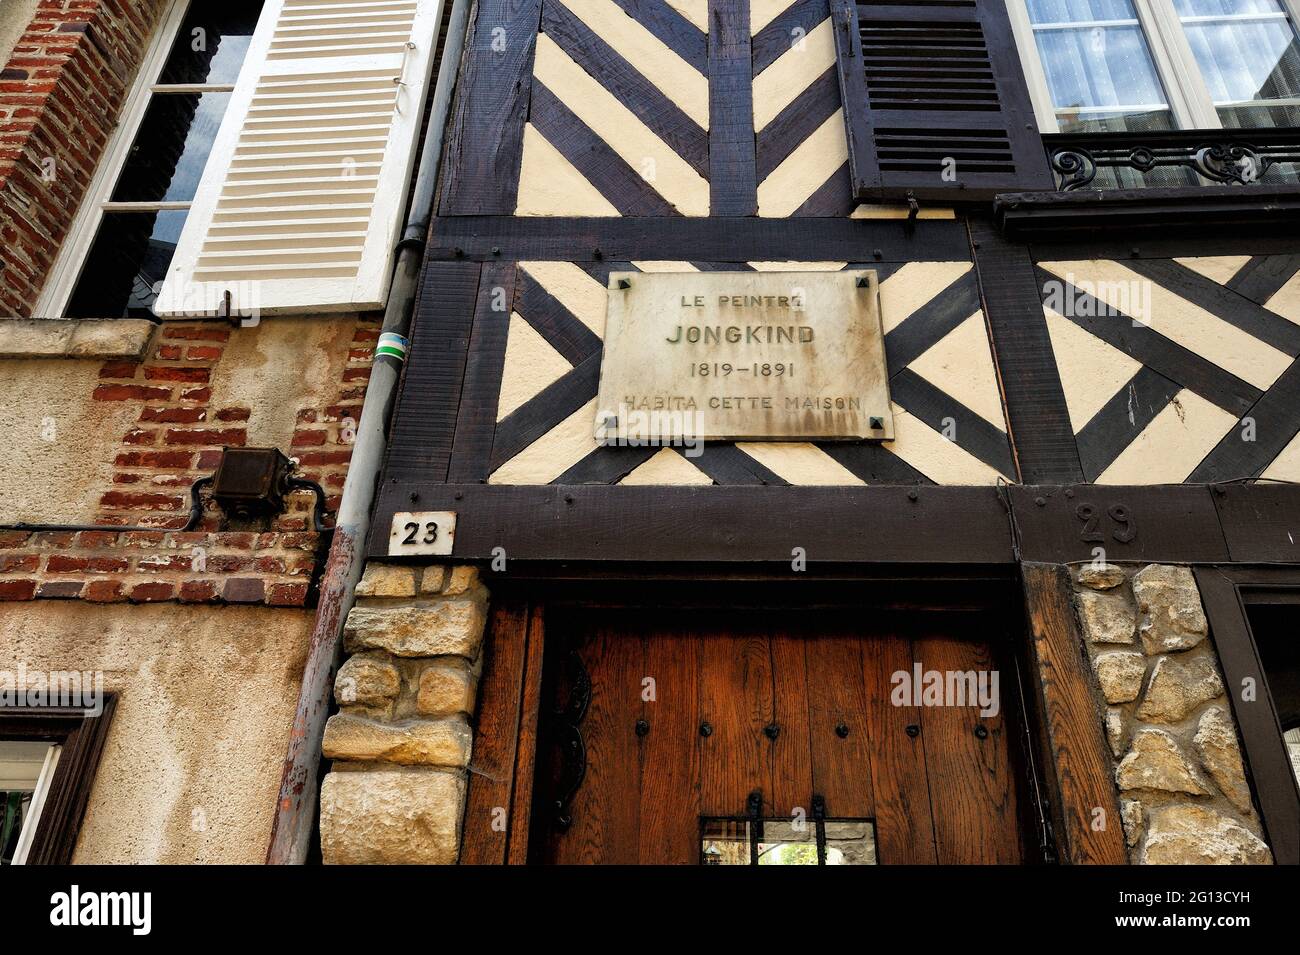 Casa del famoso pittore olandese Johan Barthold Jongkind considerato un precursore dell'impressionismo, città vecchia di Honfleur, Calvados, Normandia, Francia, Foto Stock